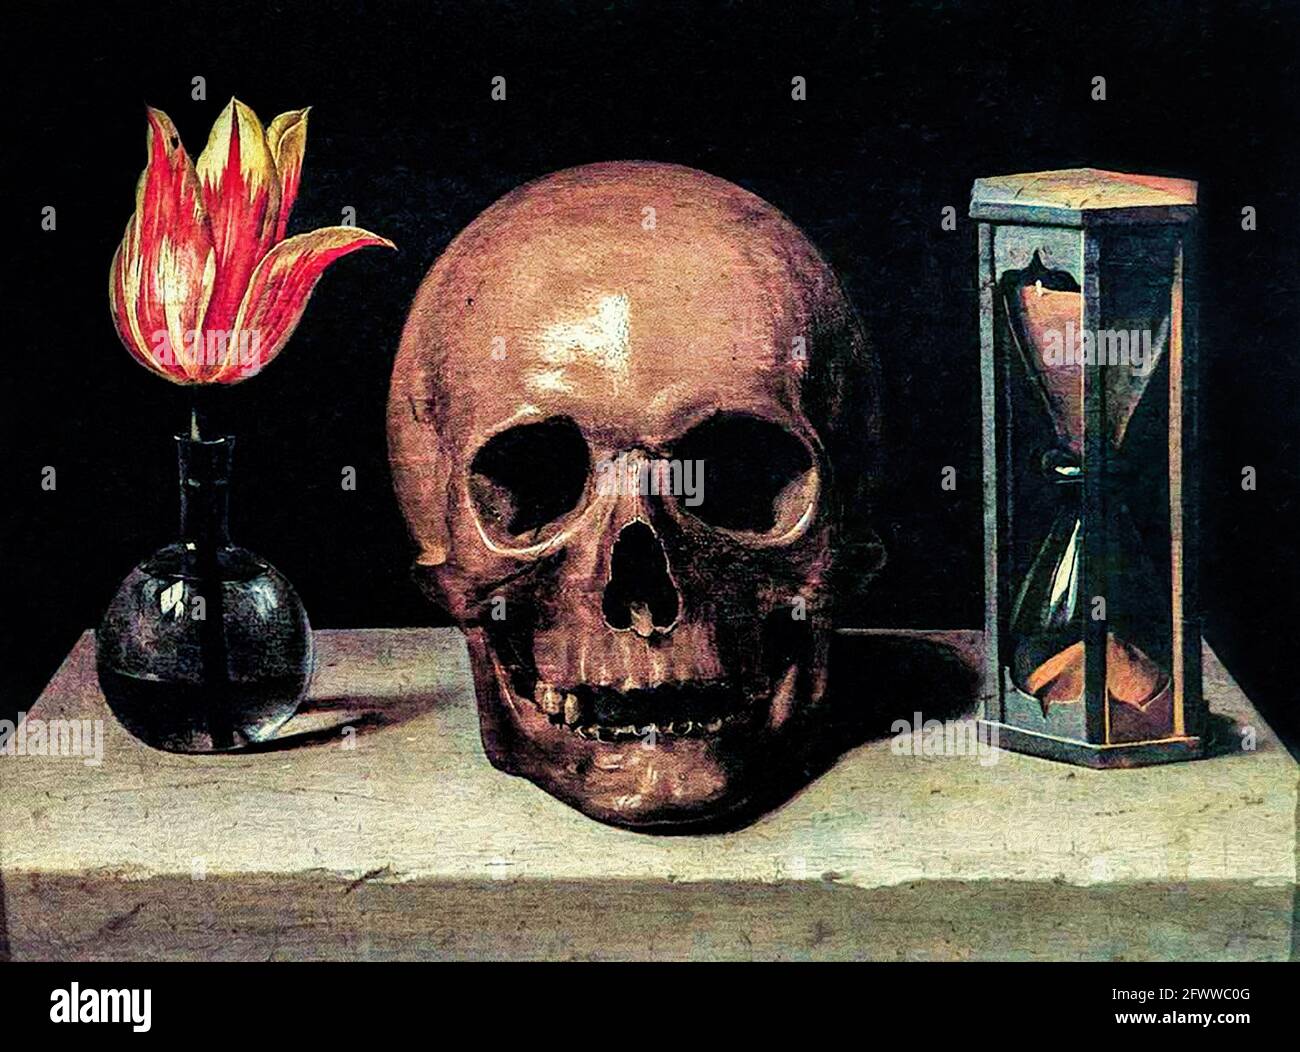 Eine geschnittene Tulpenblume in einer Glasvase mit Wasser, ein menschlicher Schädel, ein Sanduhrstand auf einem steinernen Sockel symbolisieren die Endlichkeit von Leben und Tod. Das b Stockfoto